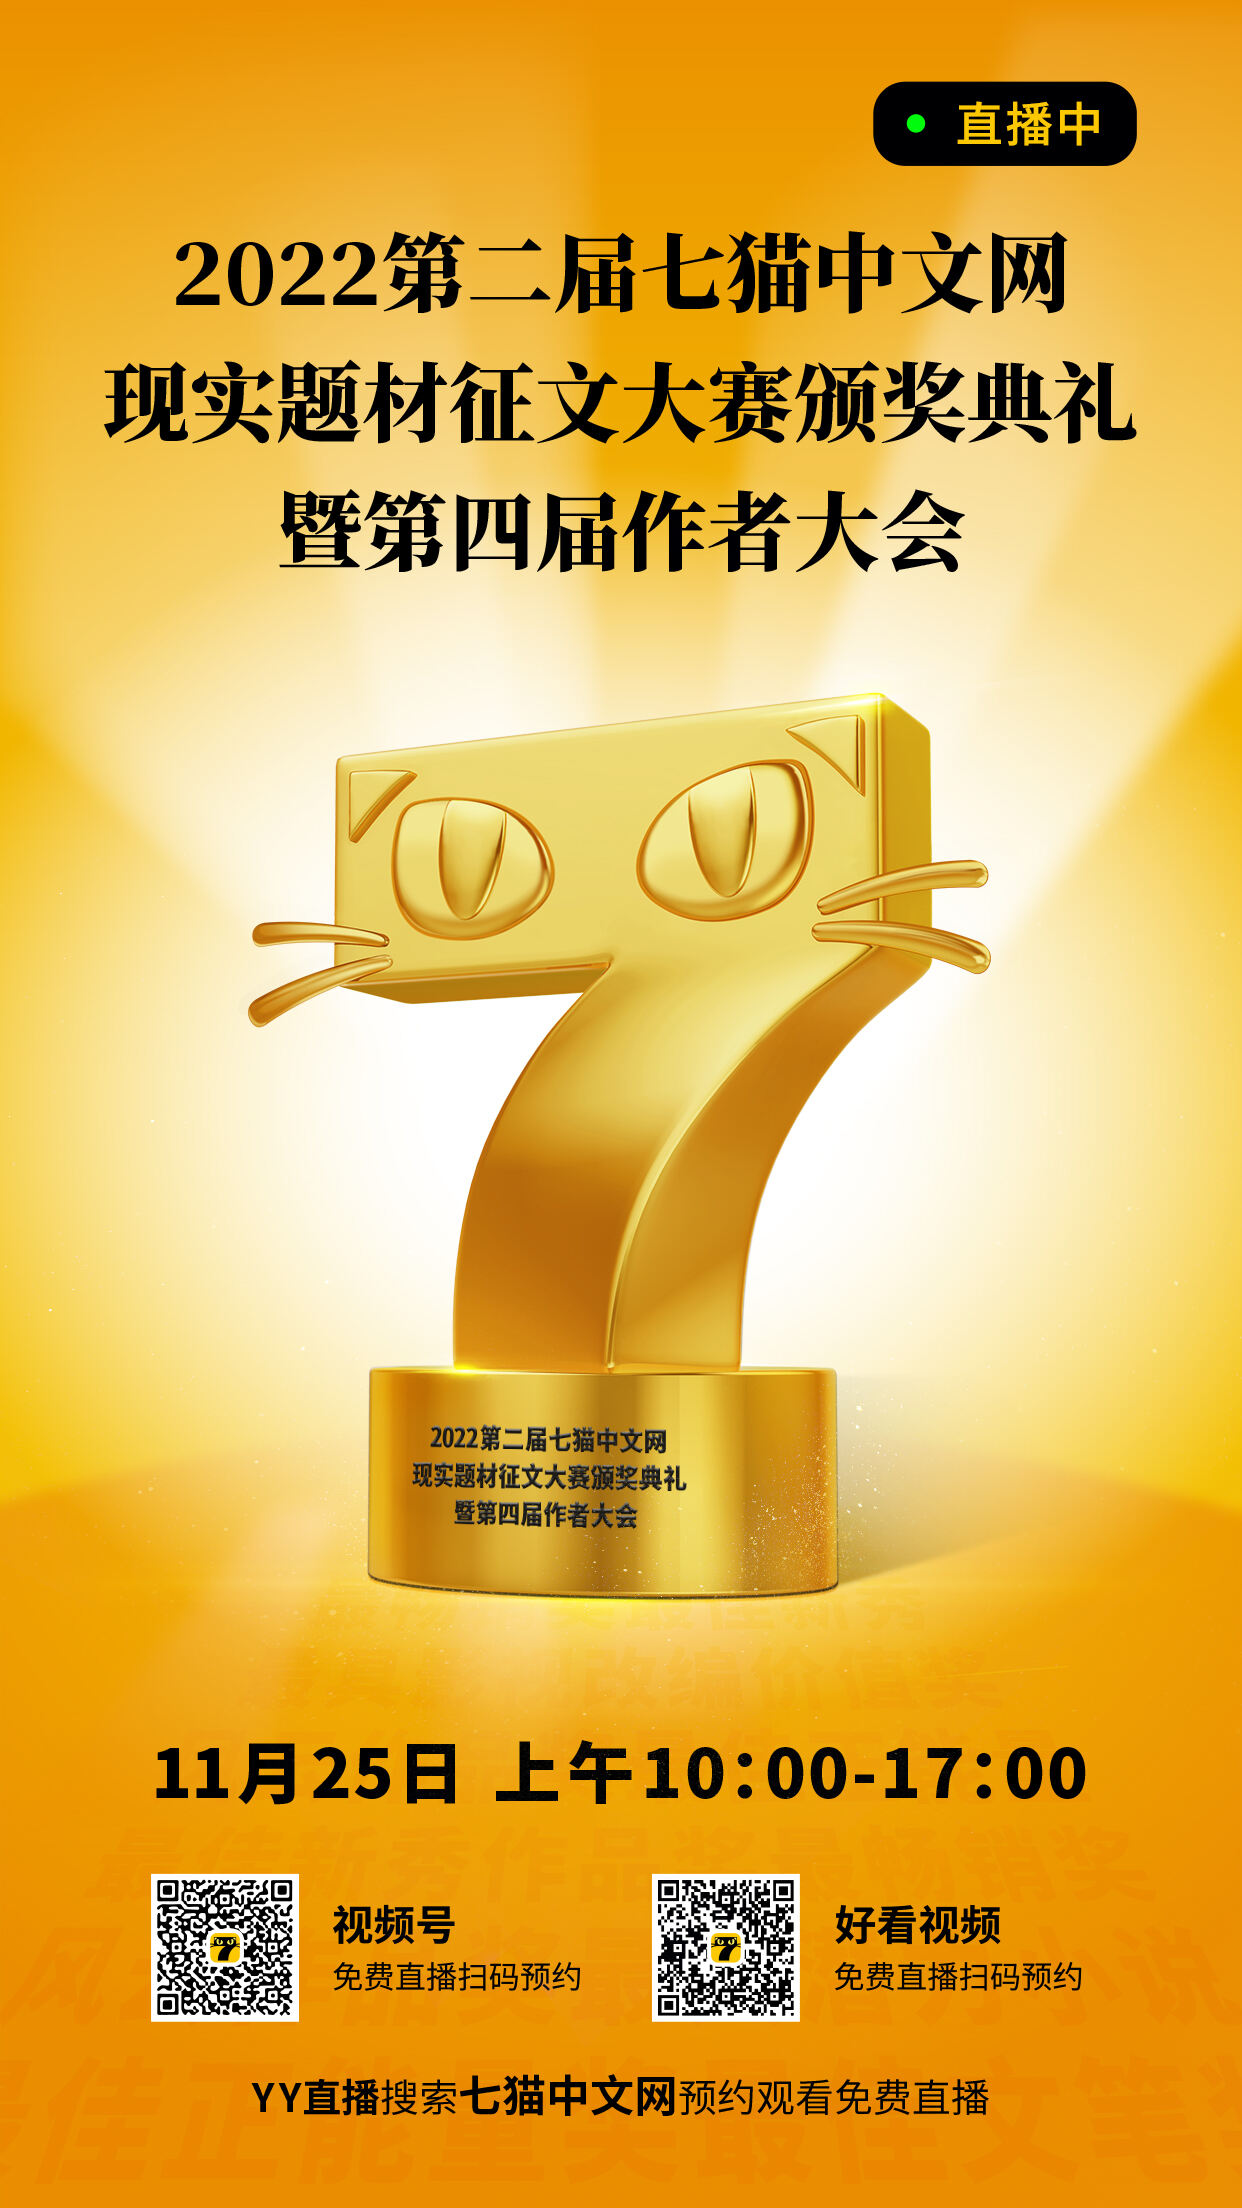 2022第二屆七貓中文網現實題材征文大賽頒獎典禮暨第四屆作者大會